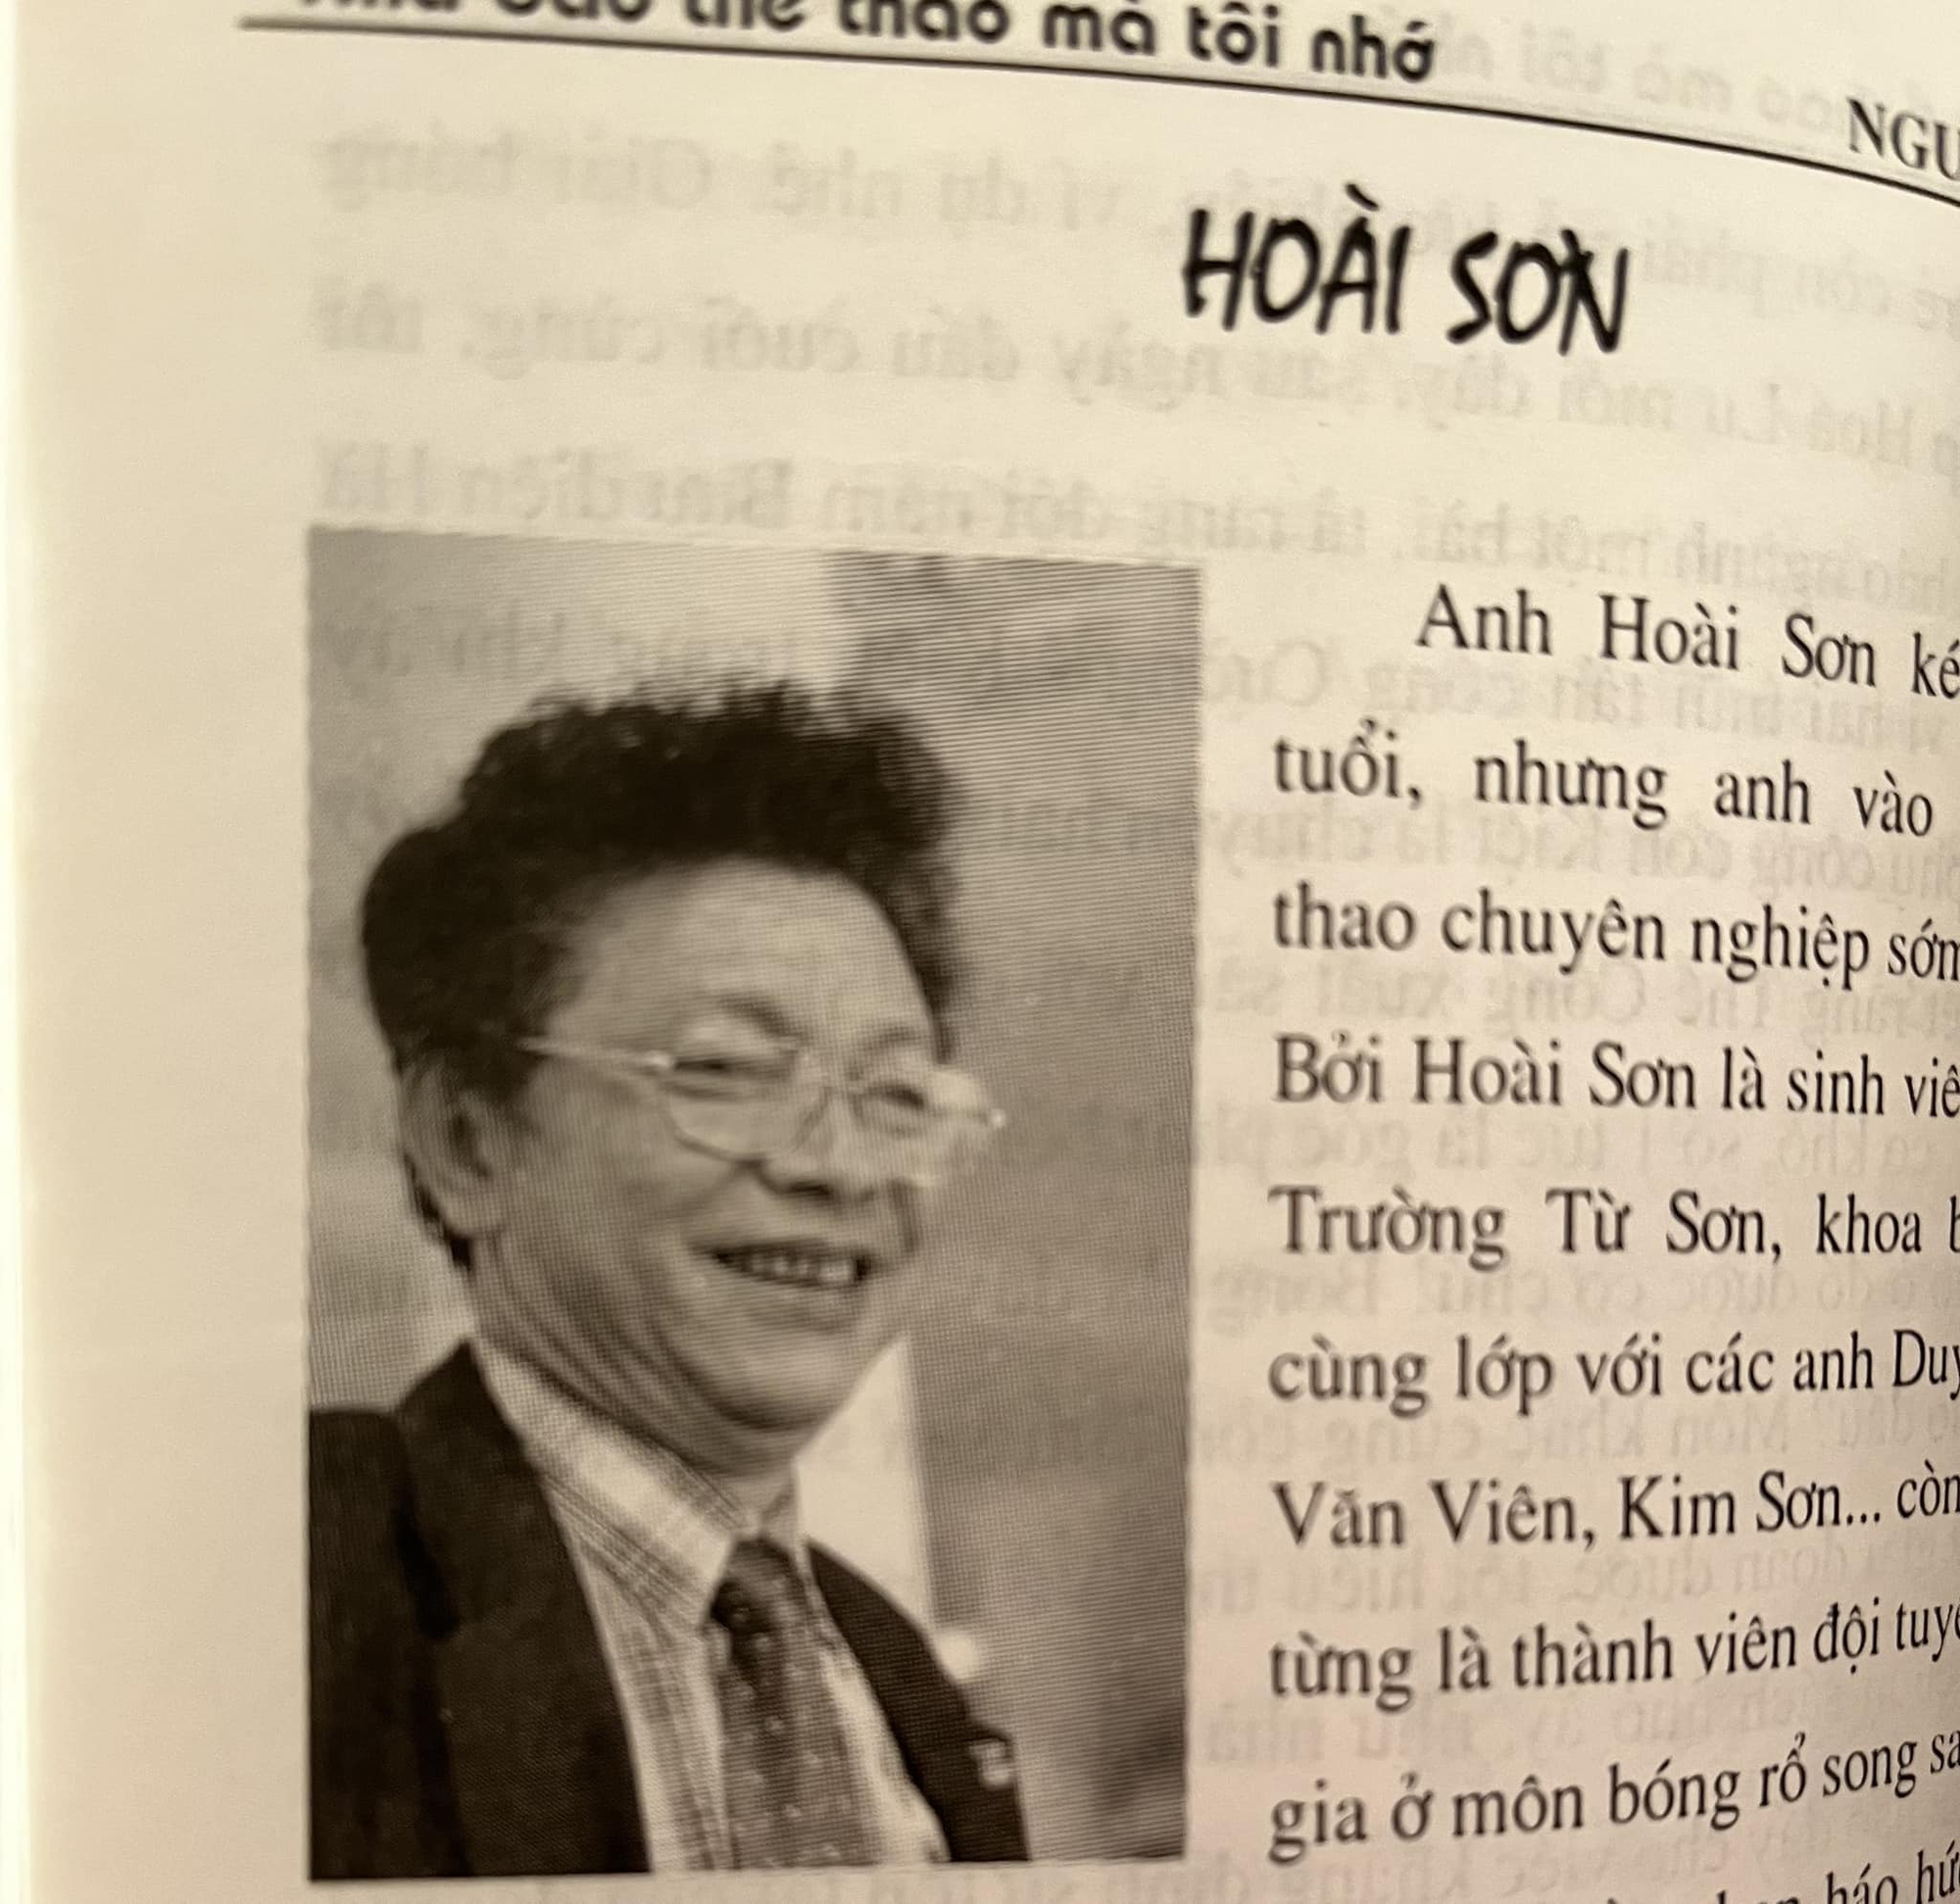 Nhà báo Nguyễn Lưu: “BLV Lê Hoài Sơn: Ngày xưa là thế đấy!” - Ảnh 1.